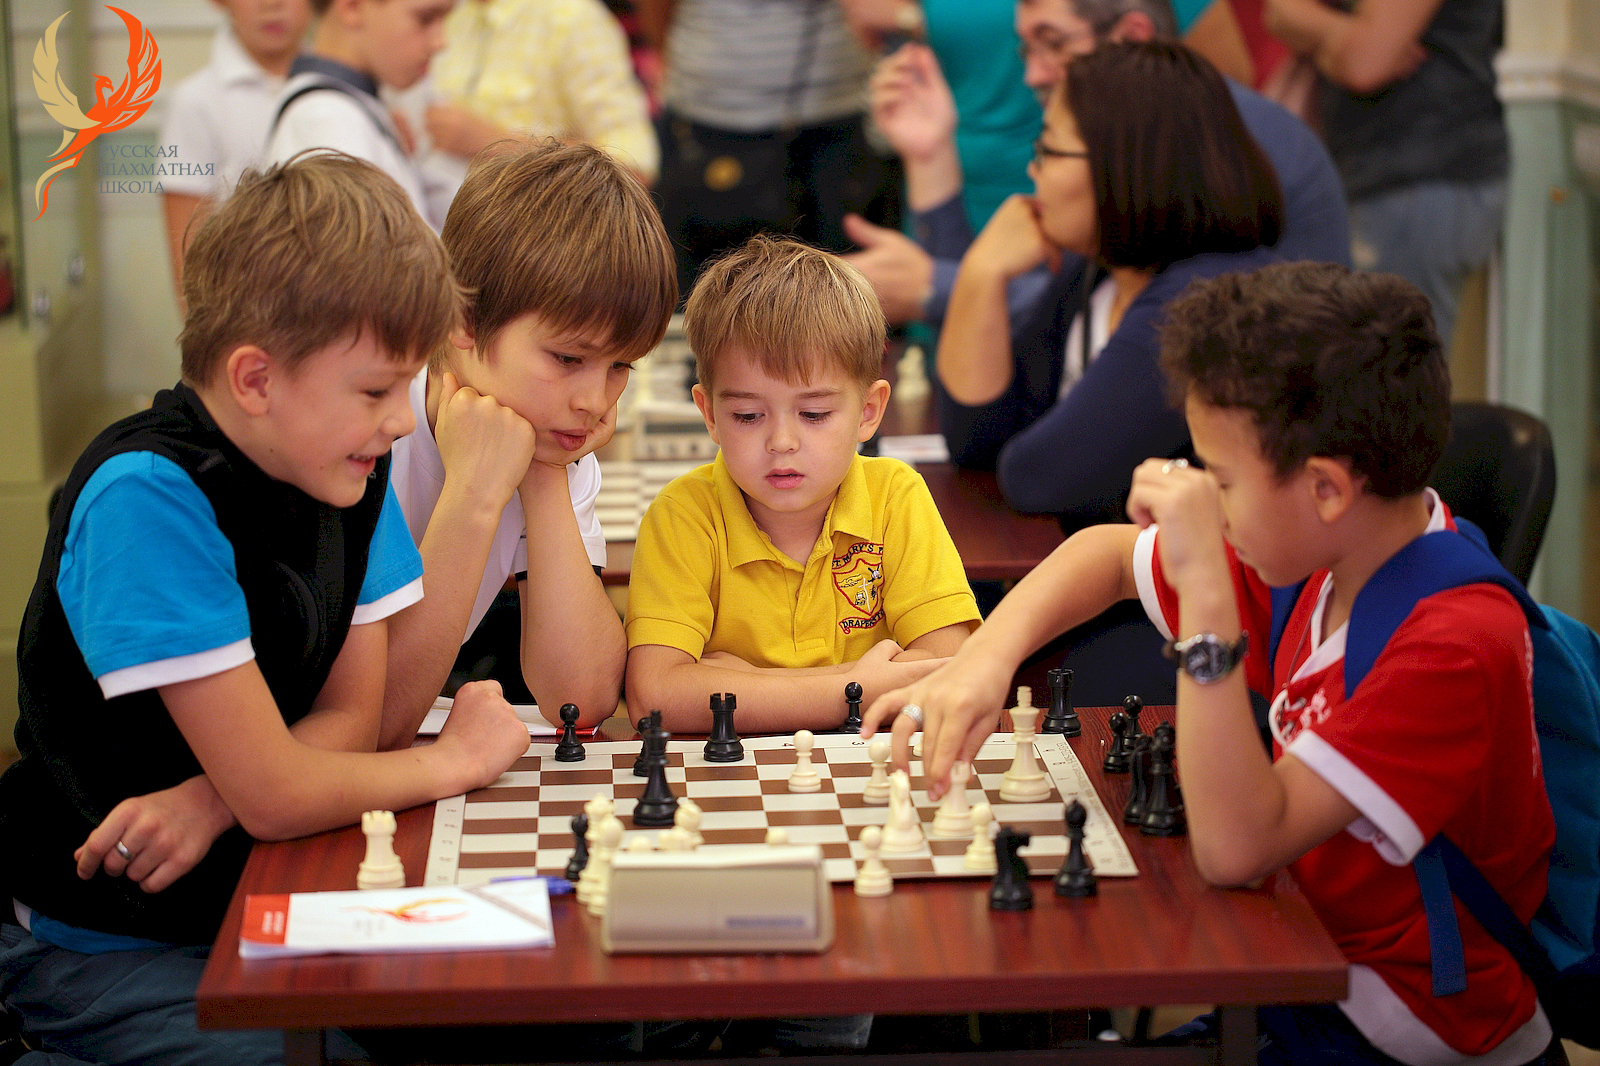 Видео играют в школу. Шахматы "школьник". Урок шахмат в школе. Младшие школьники секции шахматы. Школьники играют в шахматы.